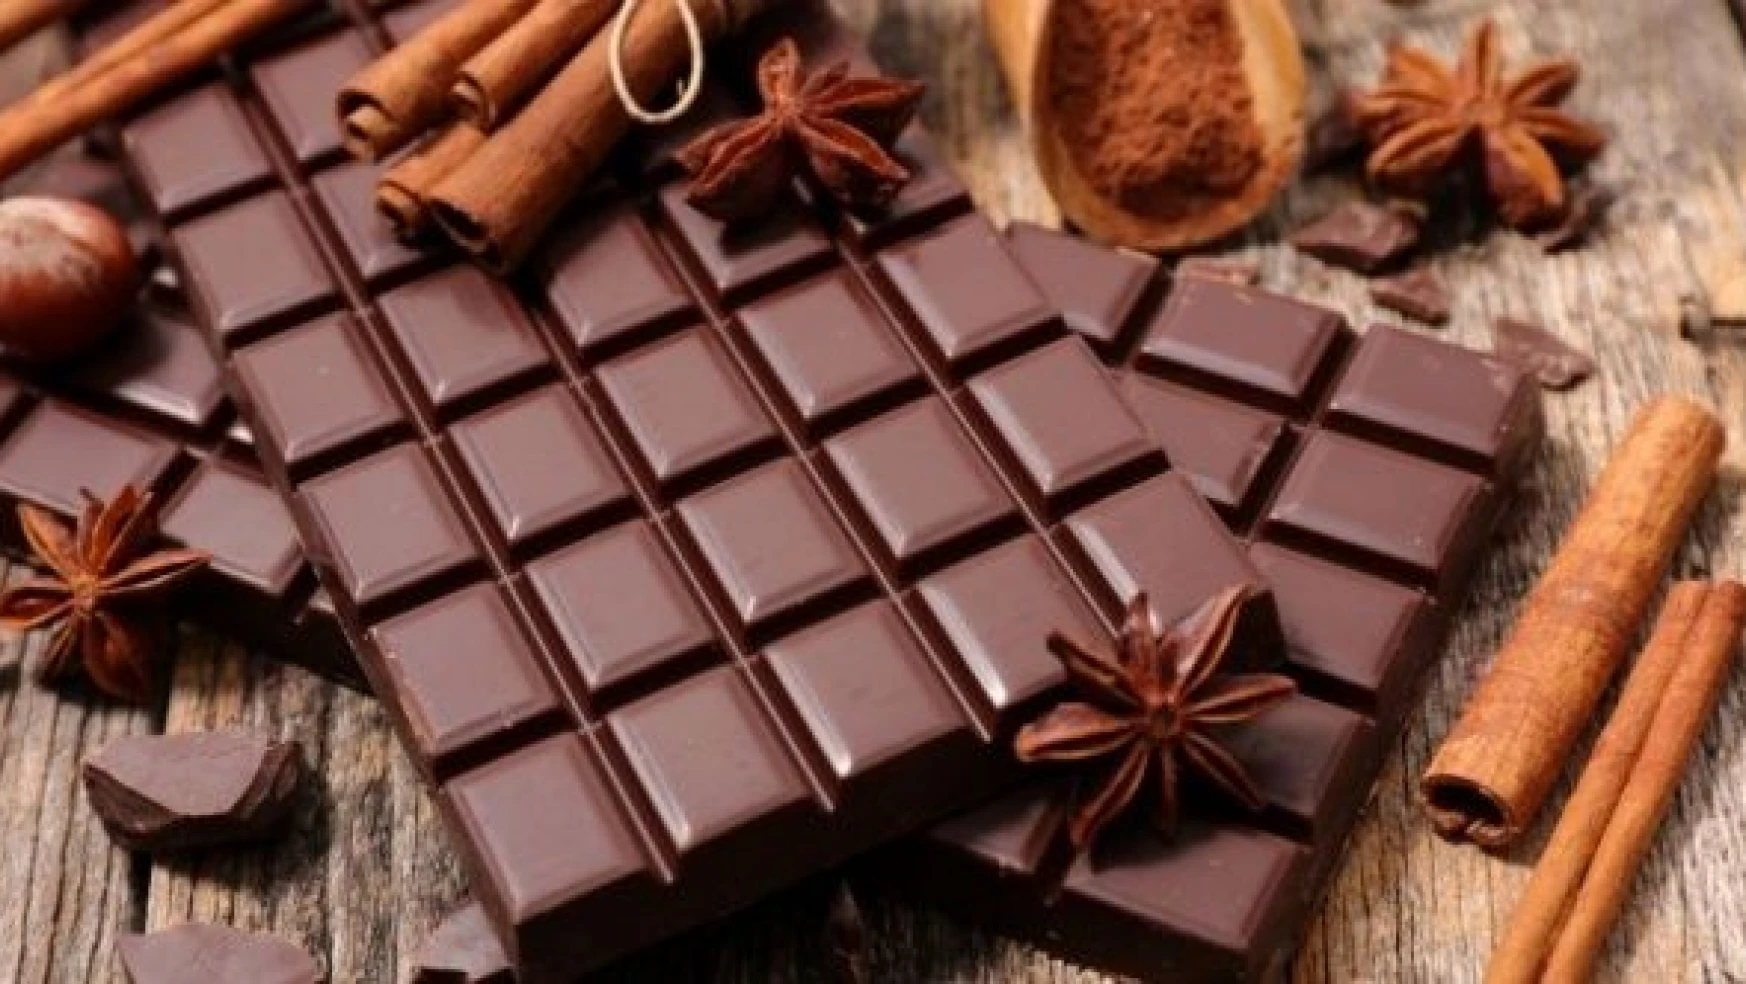 Çikolatadaki büyük tehlike... Erken ergenlik nedeni